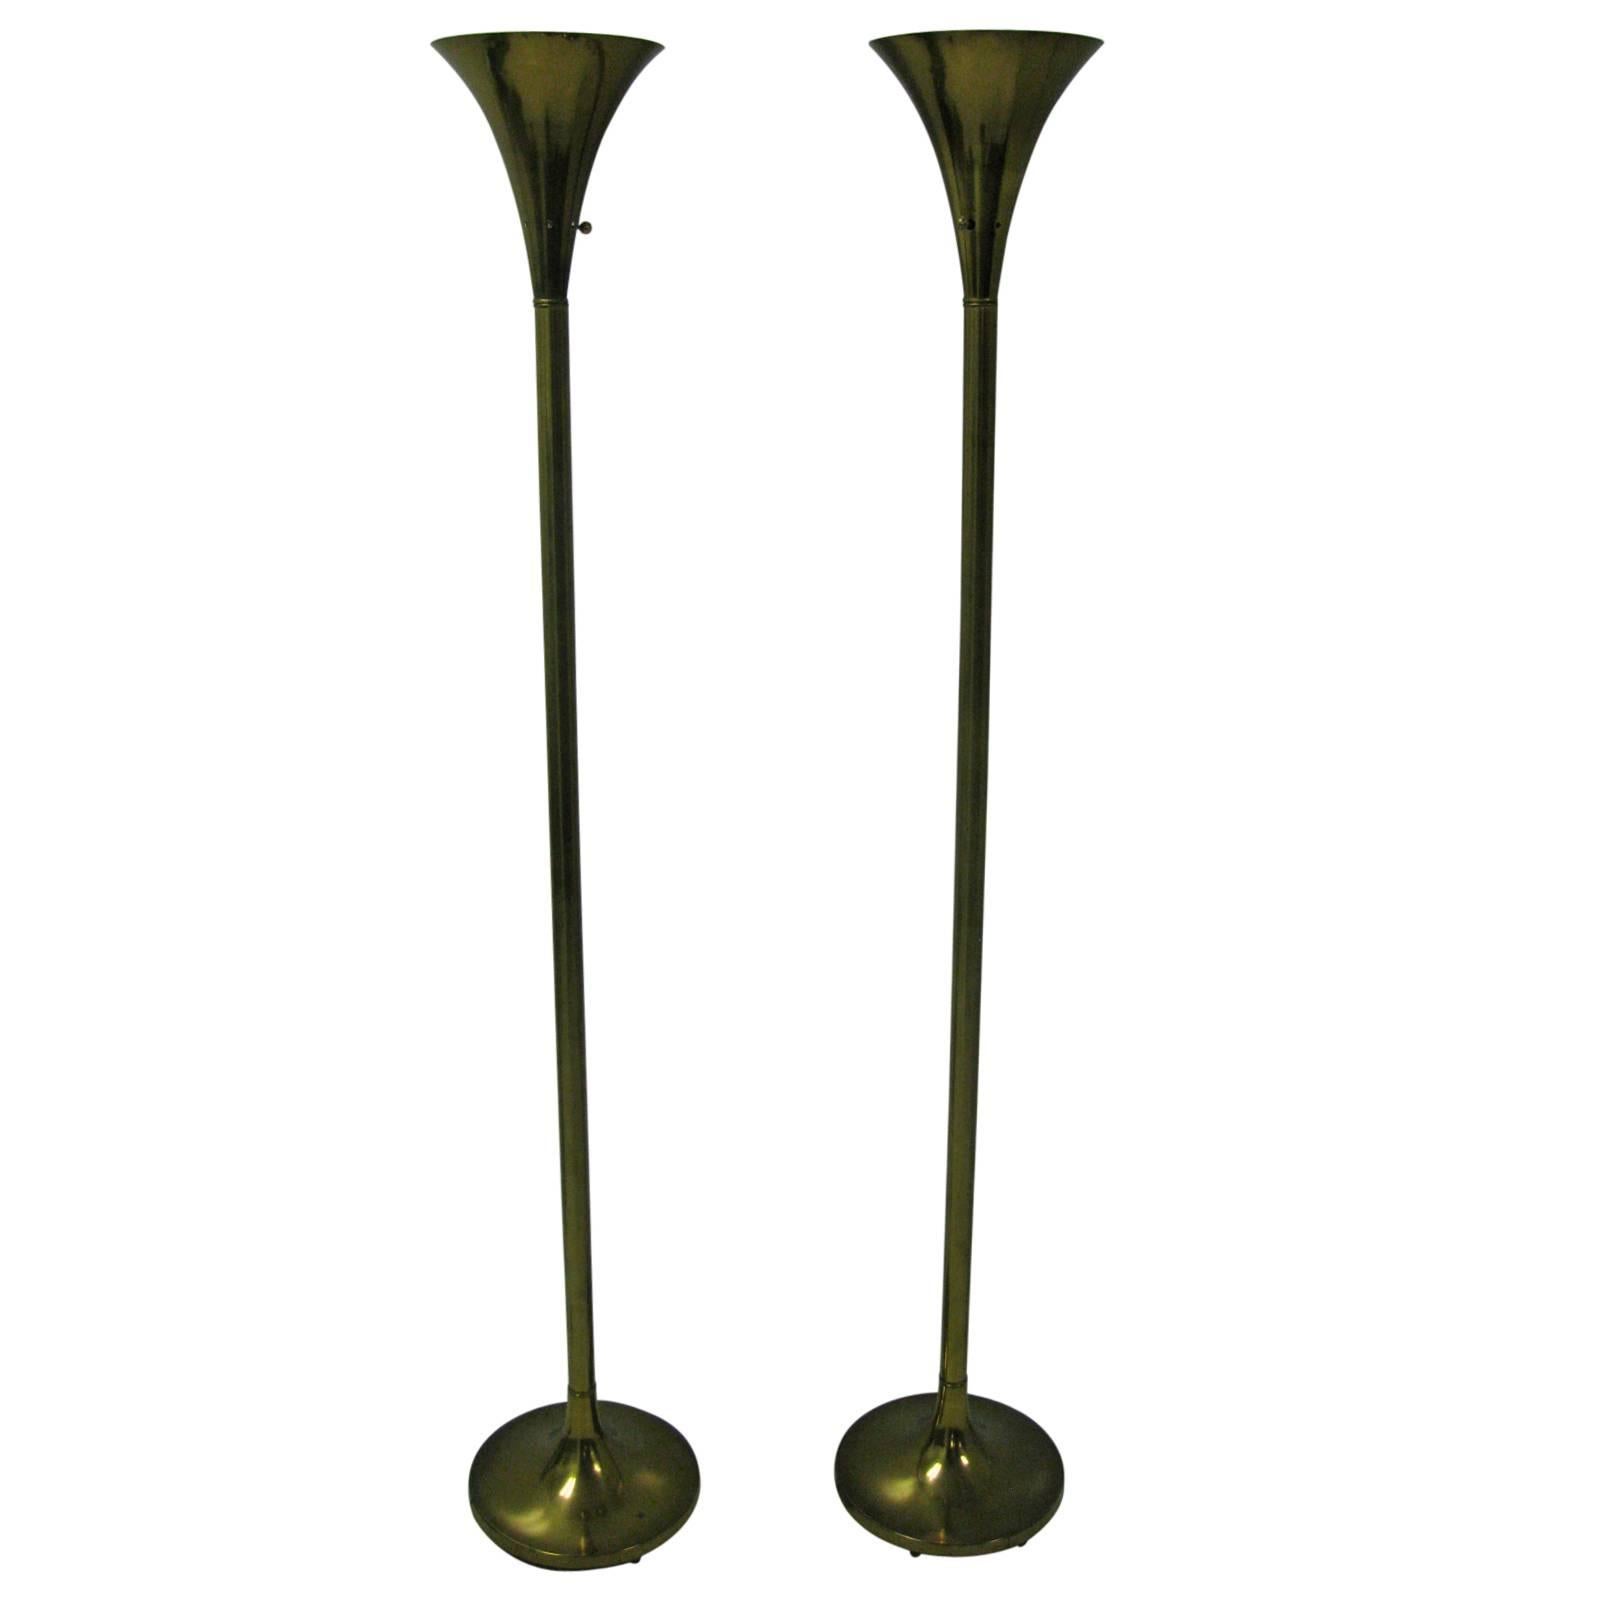 Pair of Laurel Brass Torchiere Floor Lamps